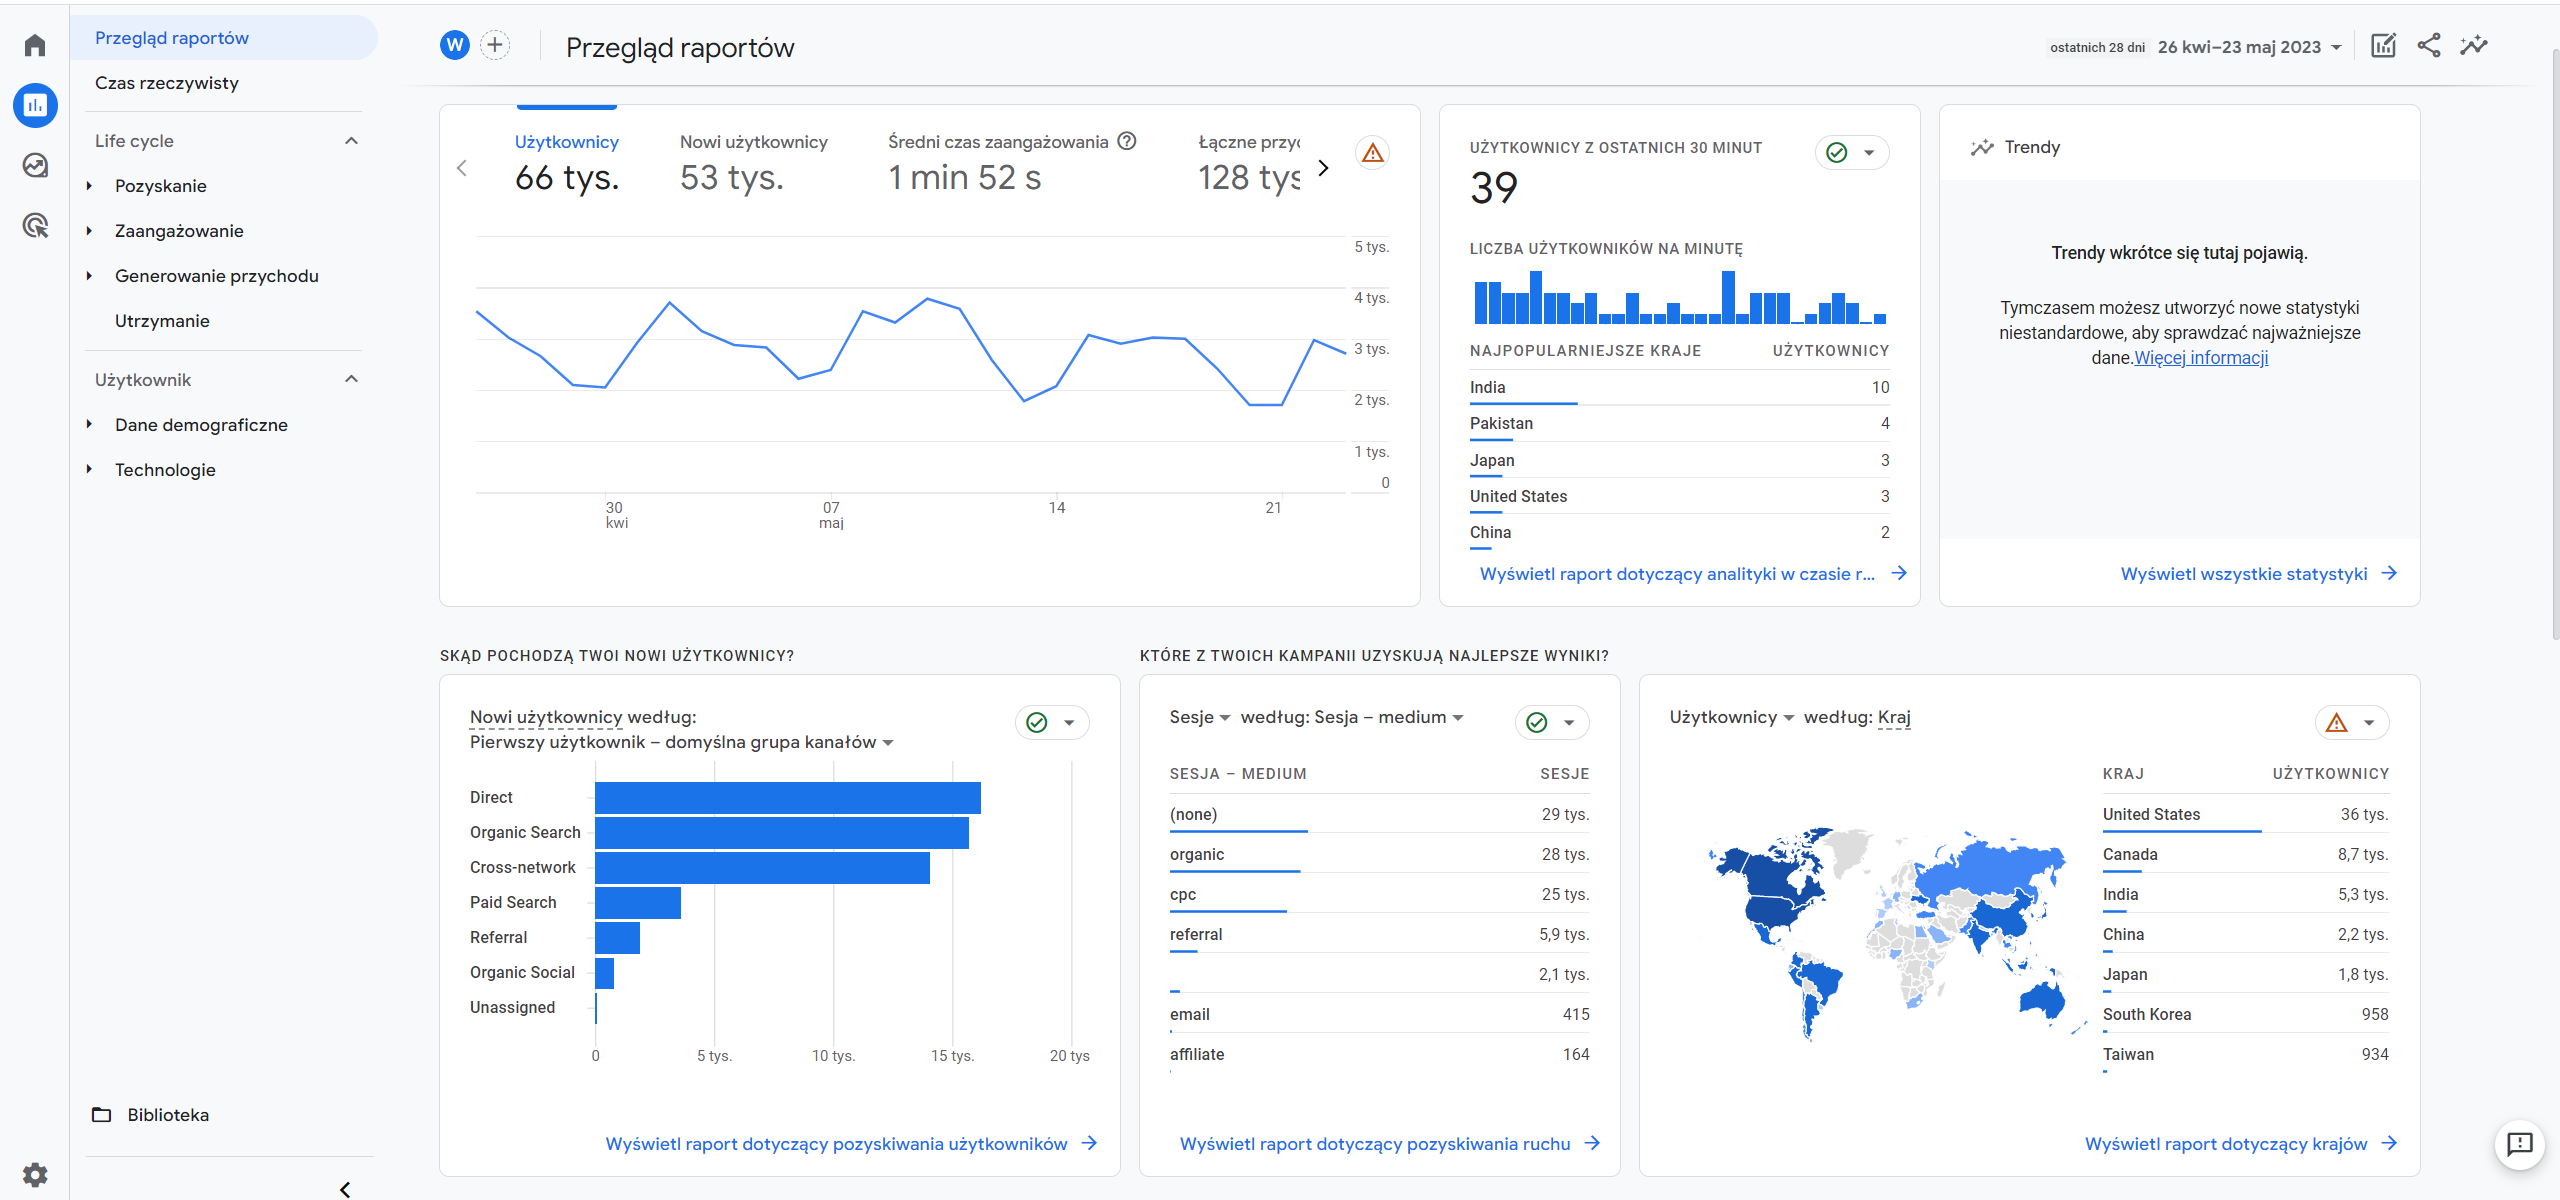  interfejs Google Analytics 4 - przegląd raportów